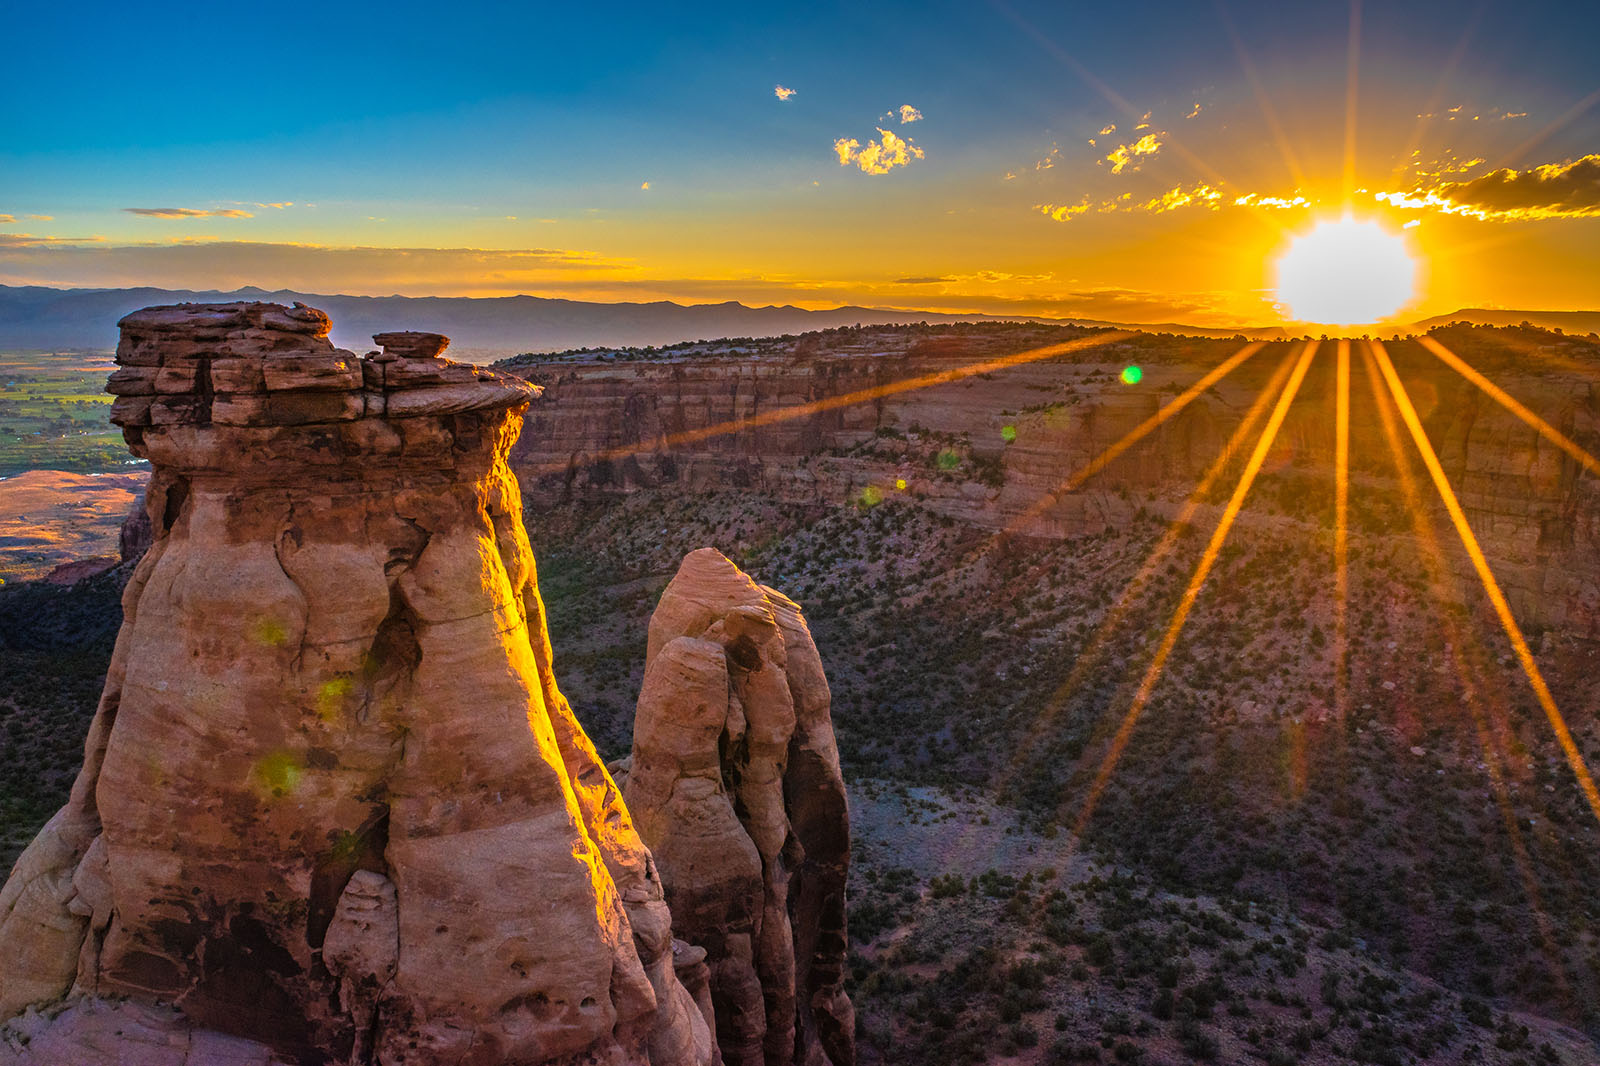 Sun dips over rocky desert landscape.